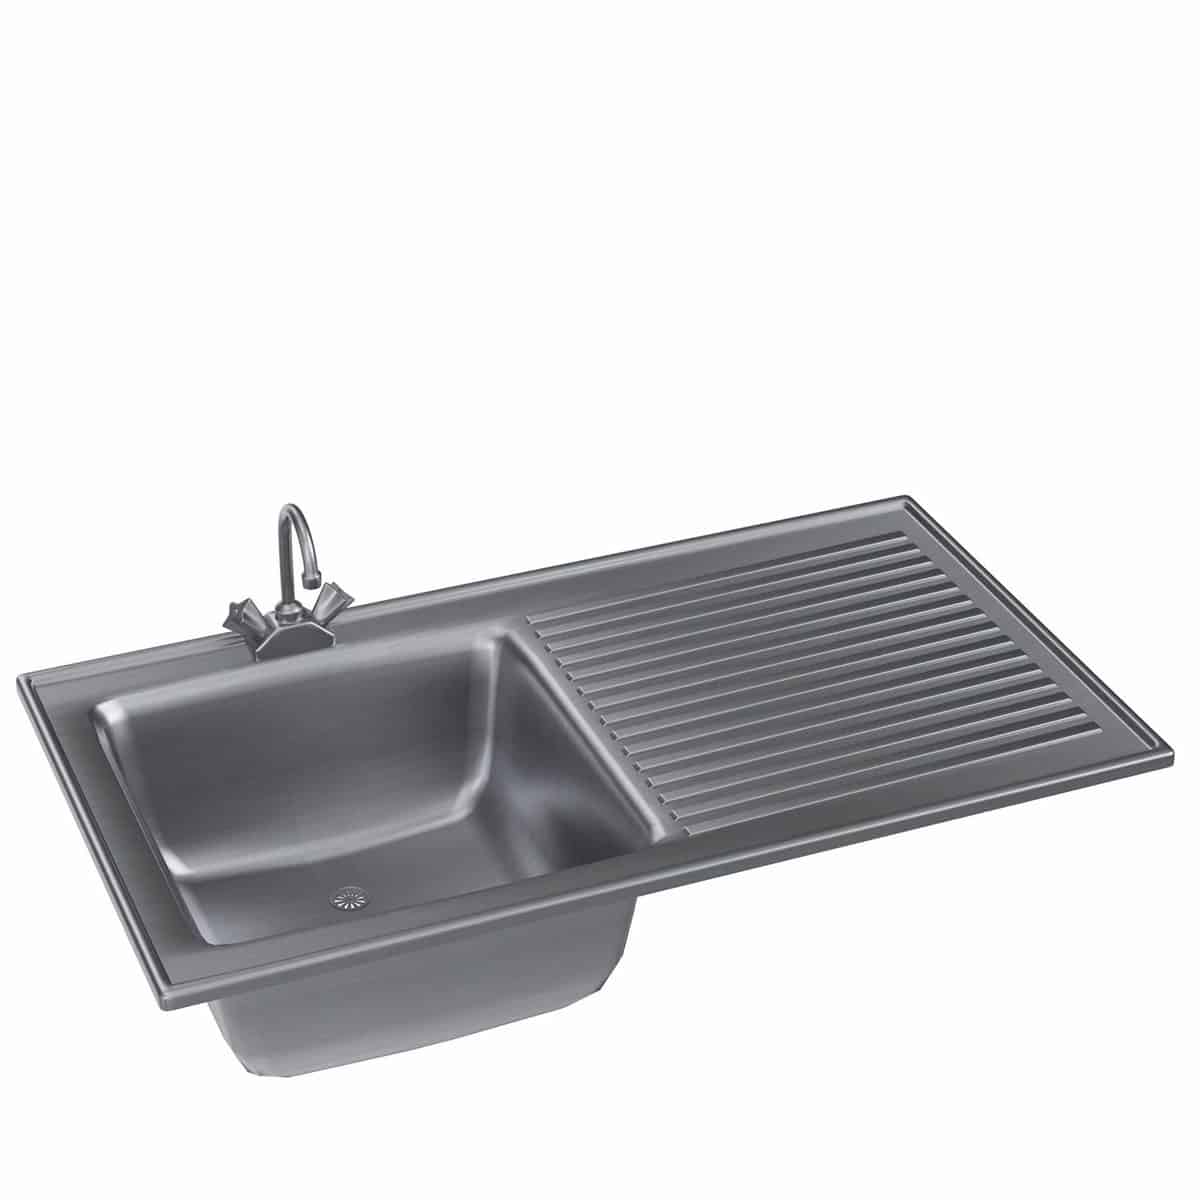 Kitchen sink with drainboard